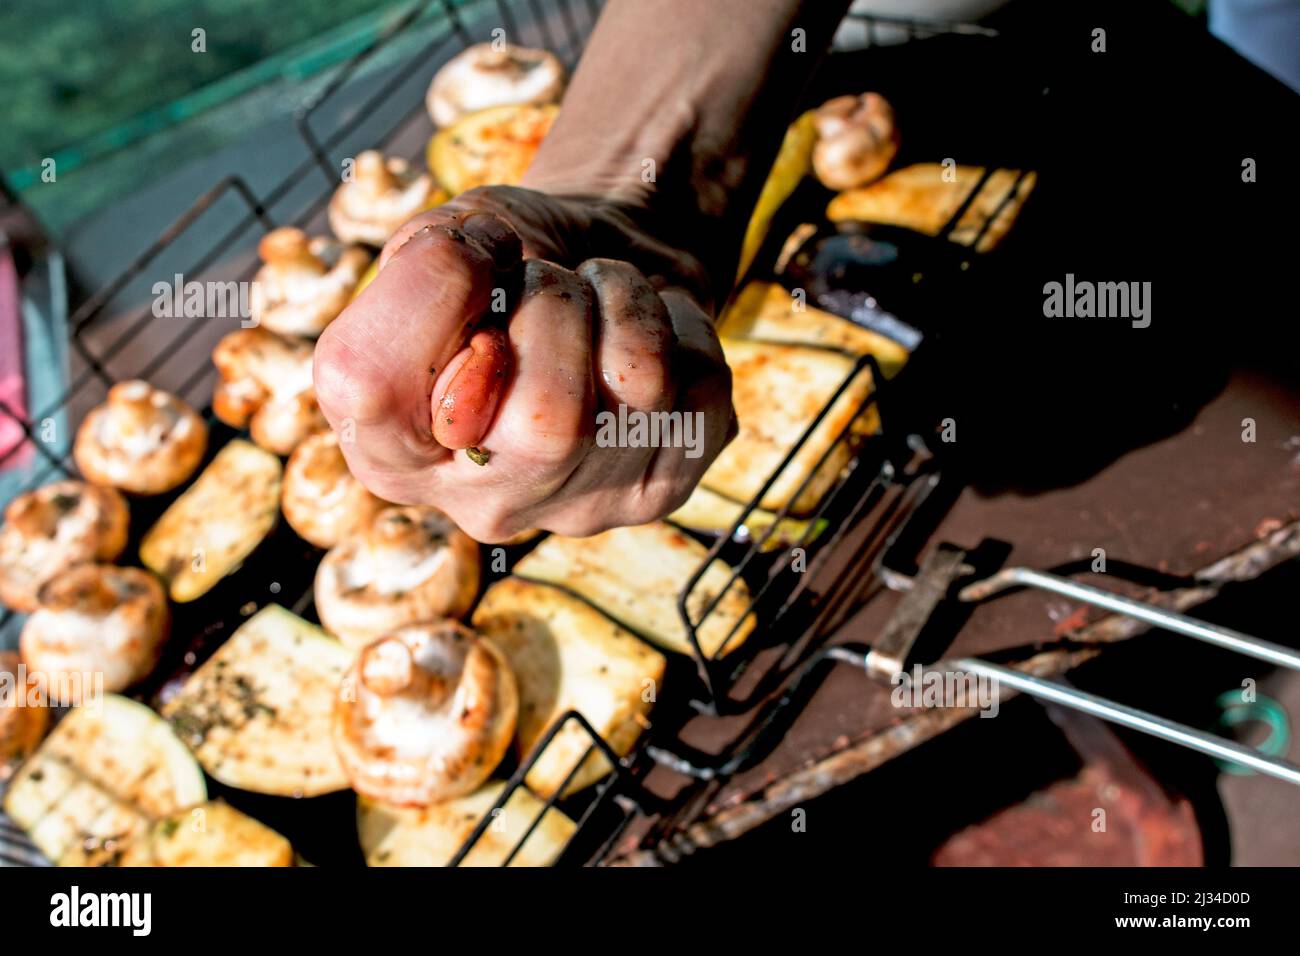 Légumes grillés. Humour. La main d'une femme montre un museau. Griller pour un pique-nique. Nourriture sur un feu ouvert. Courgettes, aubergines et champignons. Légumes frais Banque D'Images